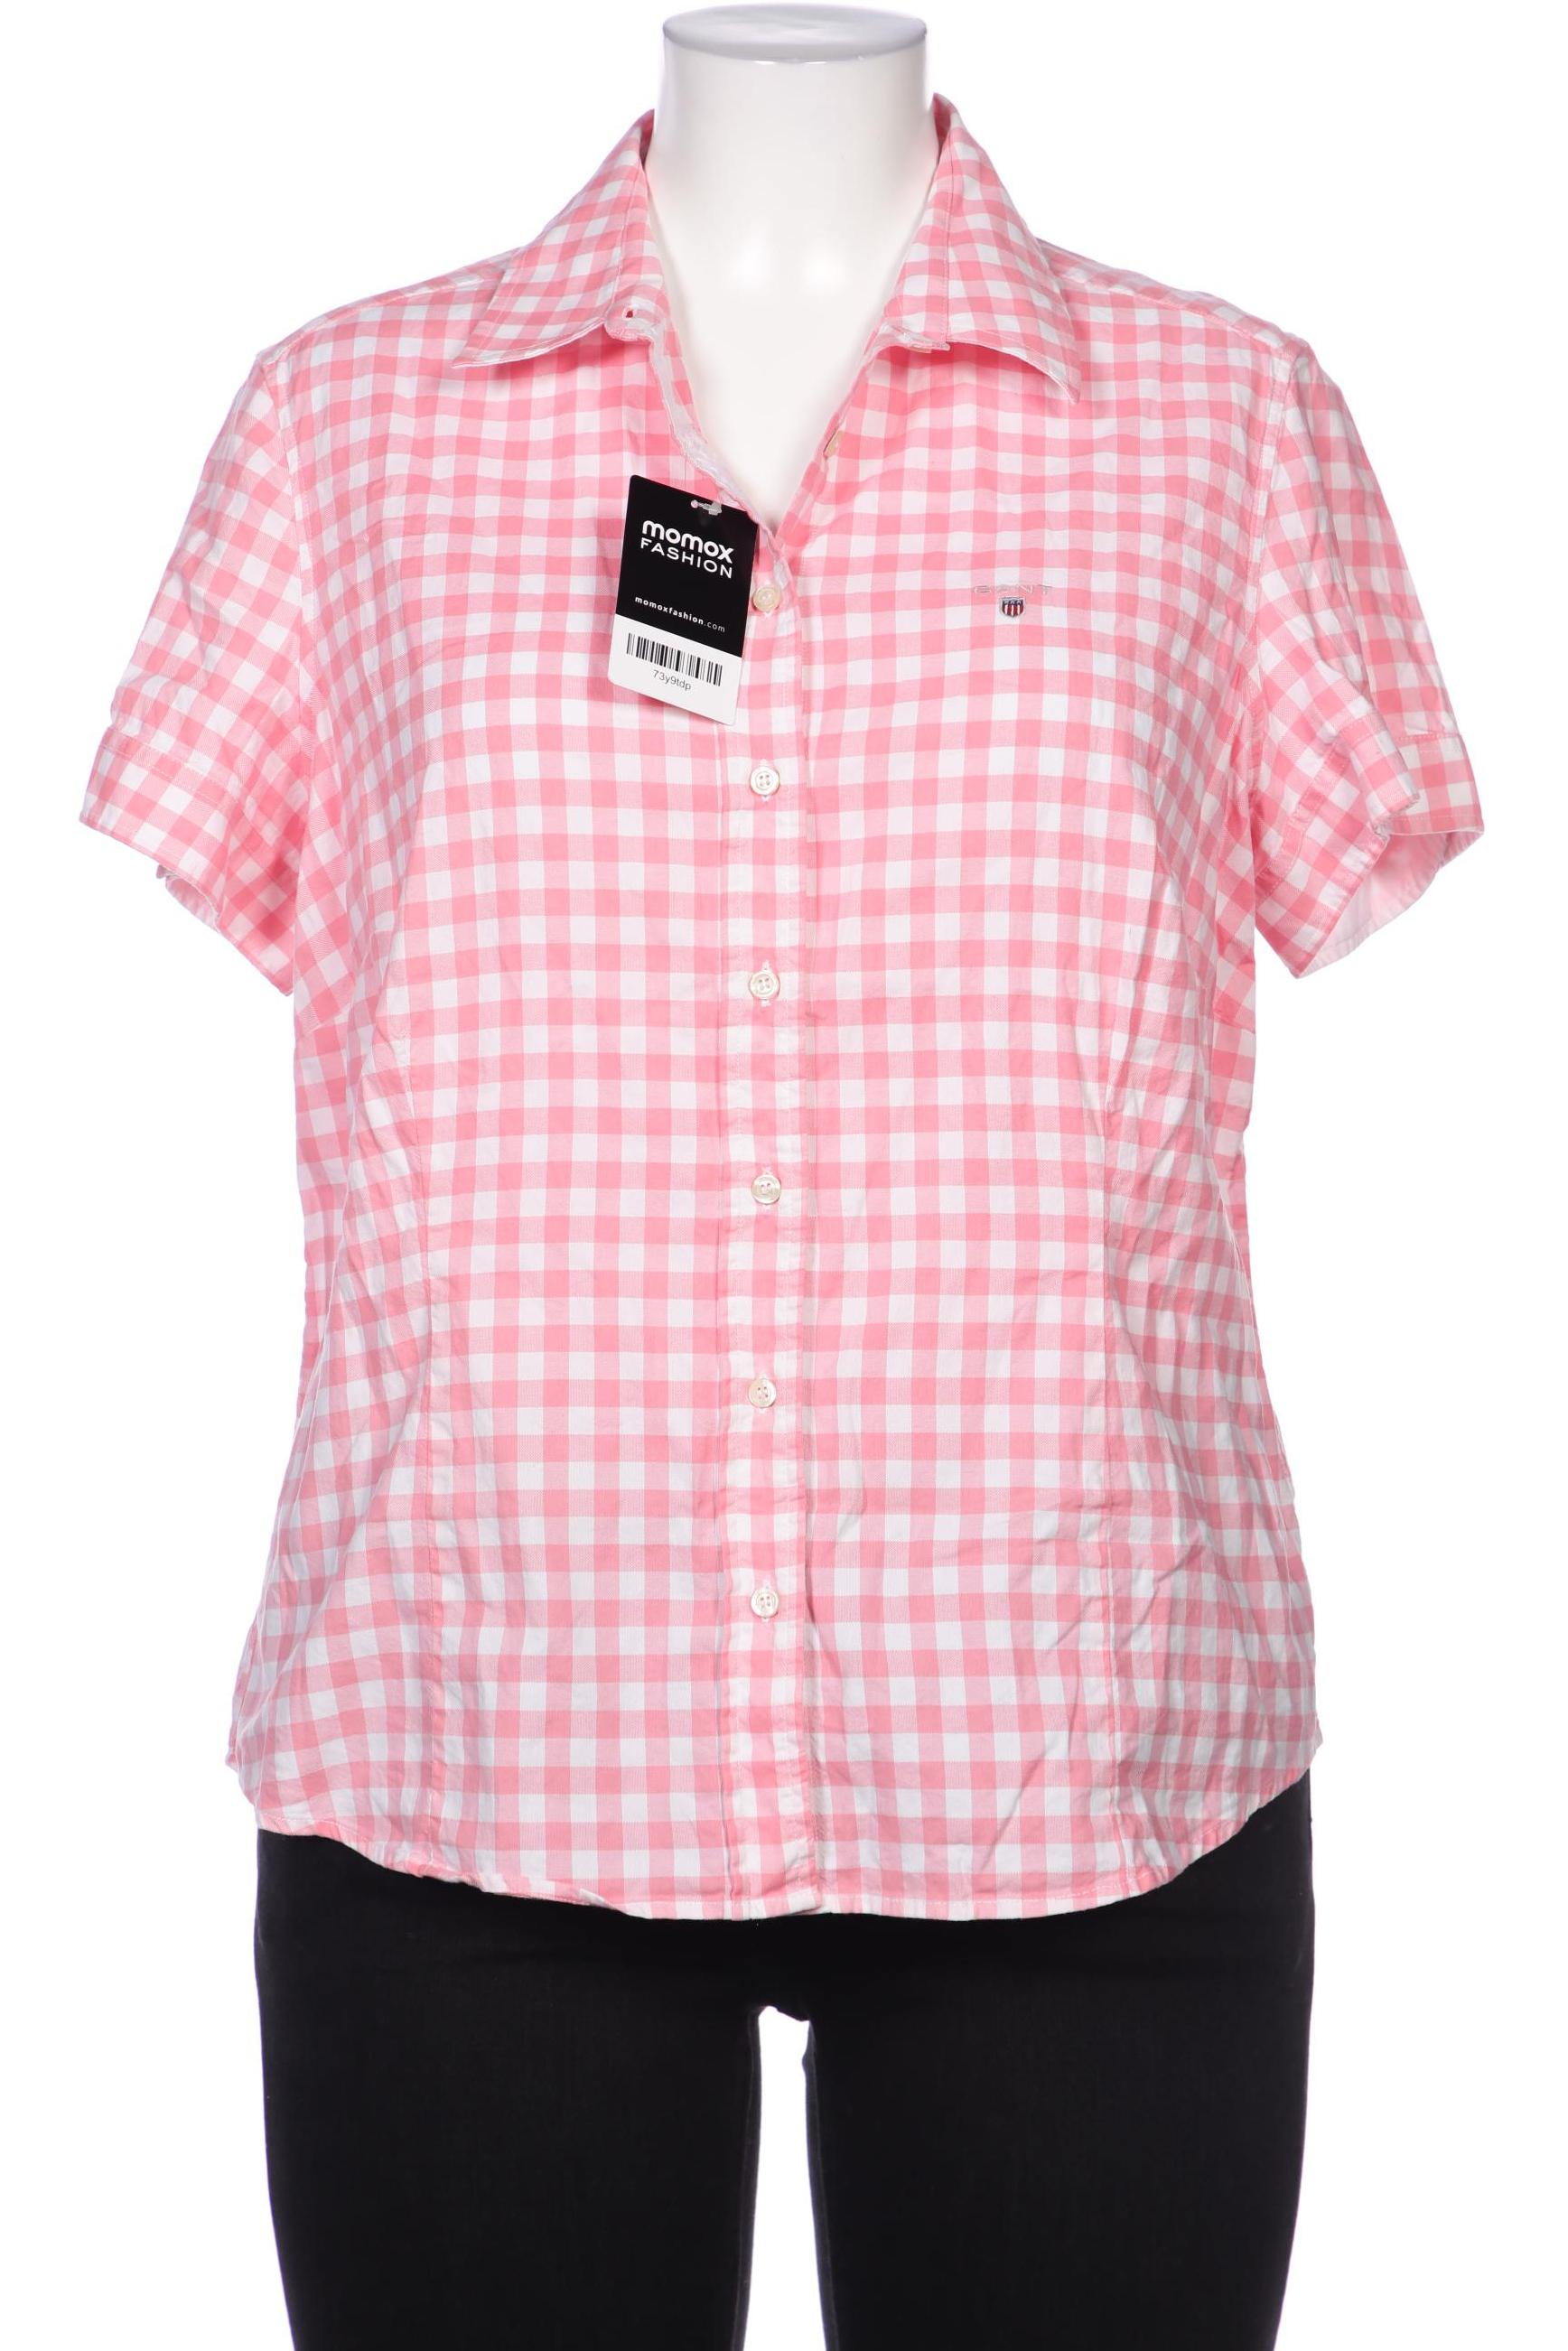 Gant Damen Bluse, pink, Gr. 48 von Gant